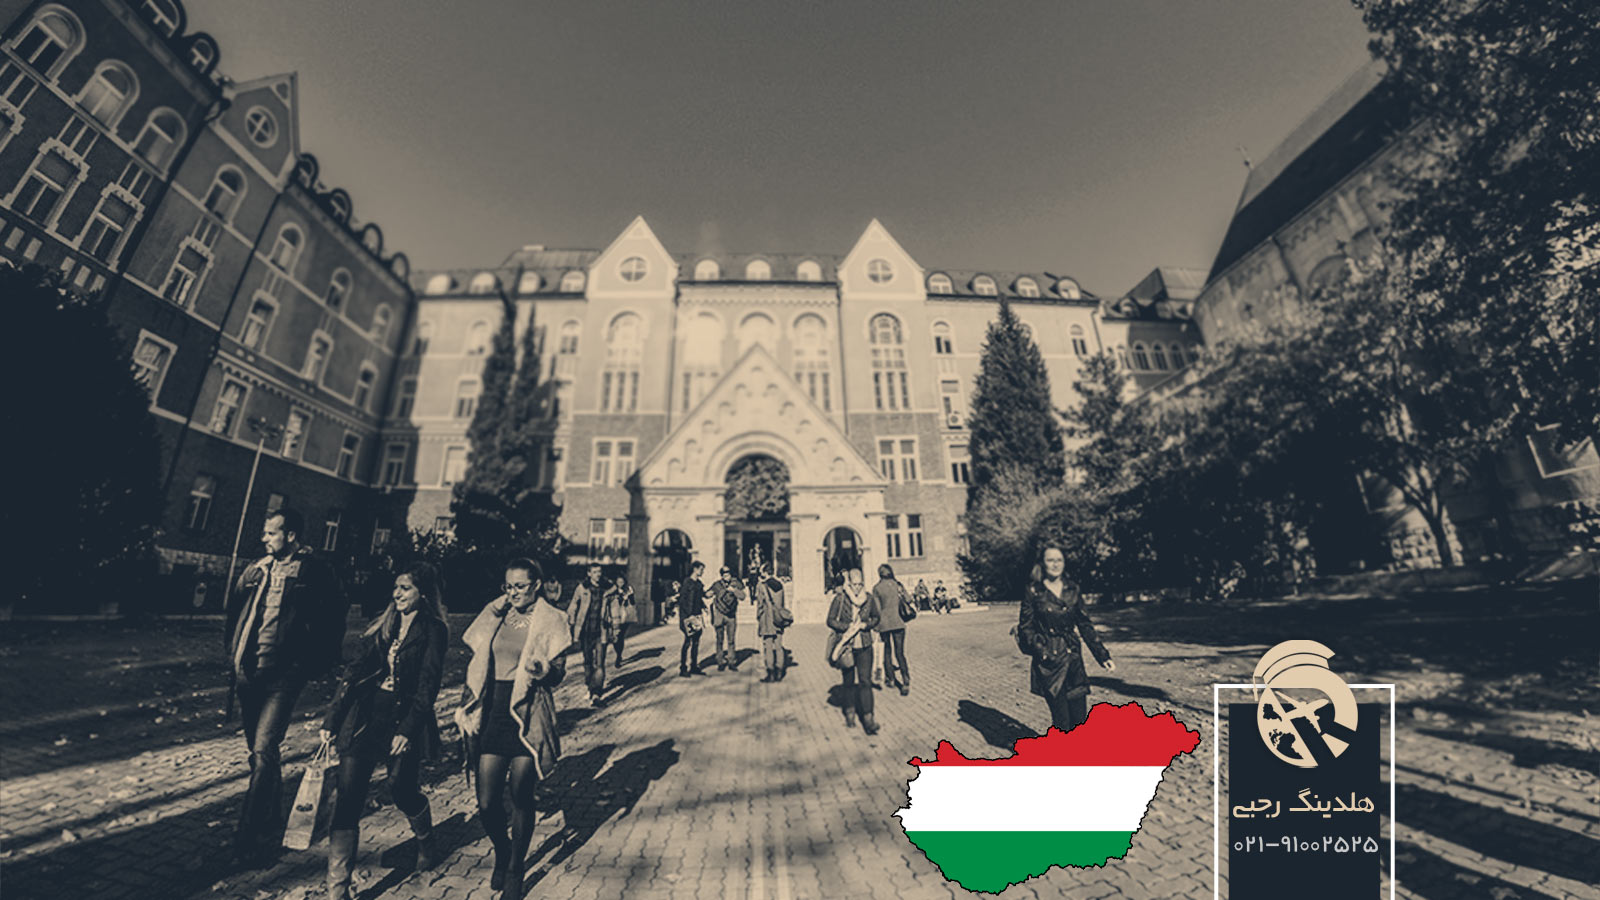 بهترین دانشگاه های مجارستان بر اساس شهر